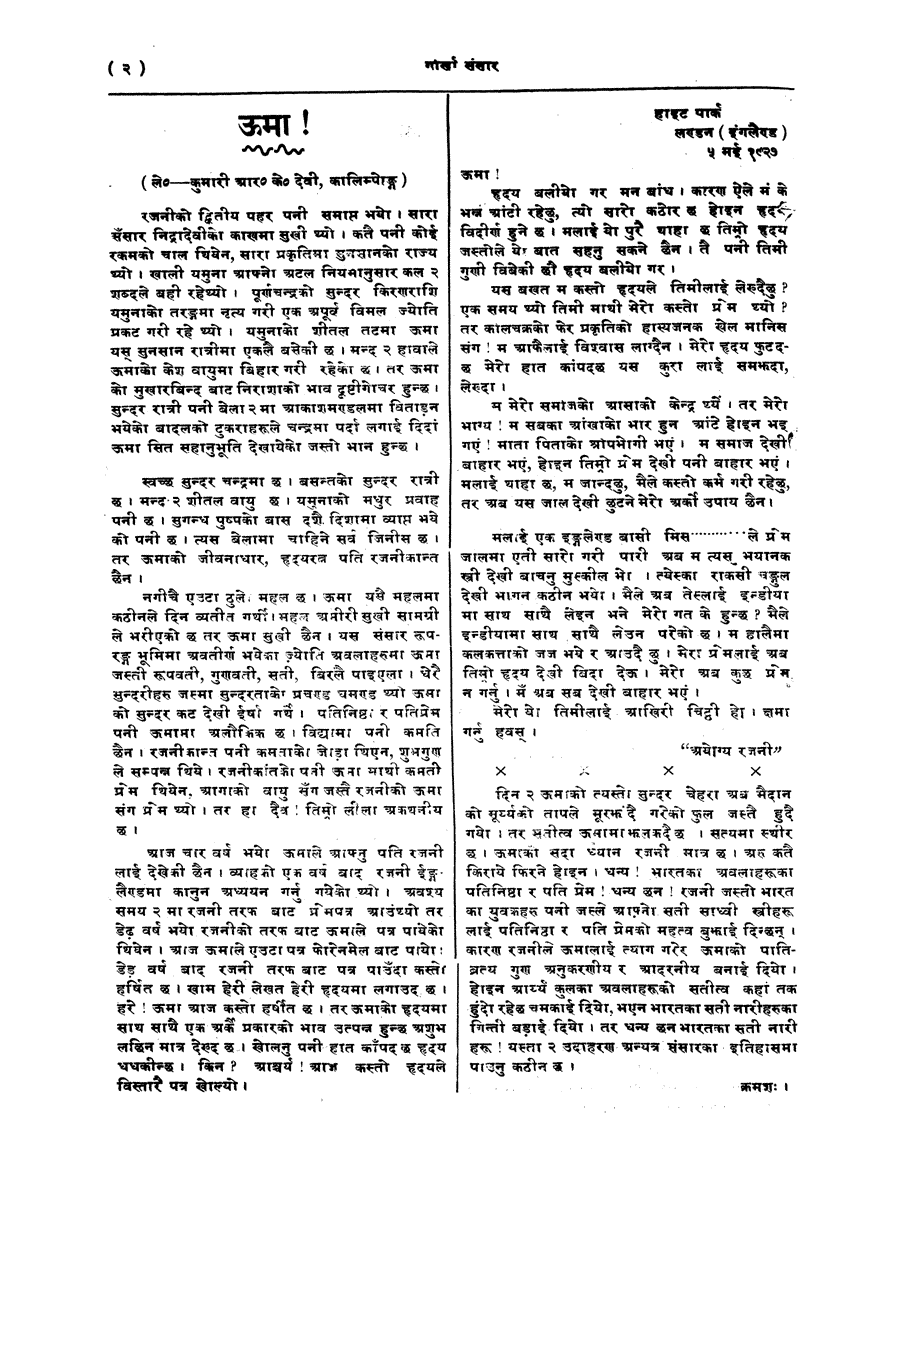 Gorkha Sansar, 7 Feb 1928, page 2